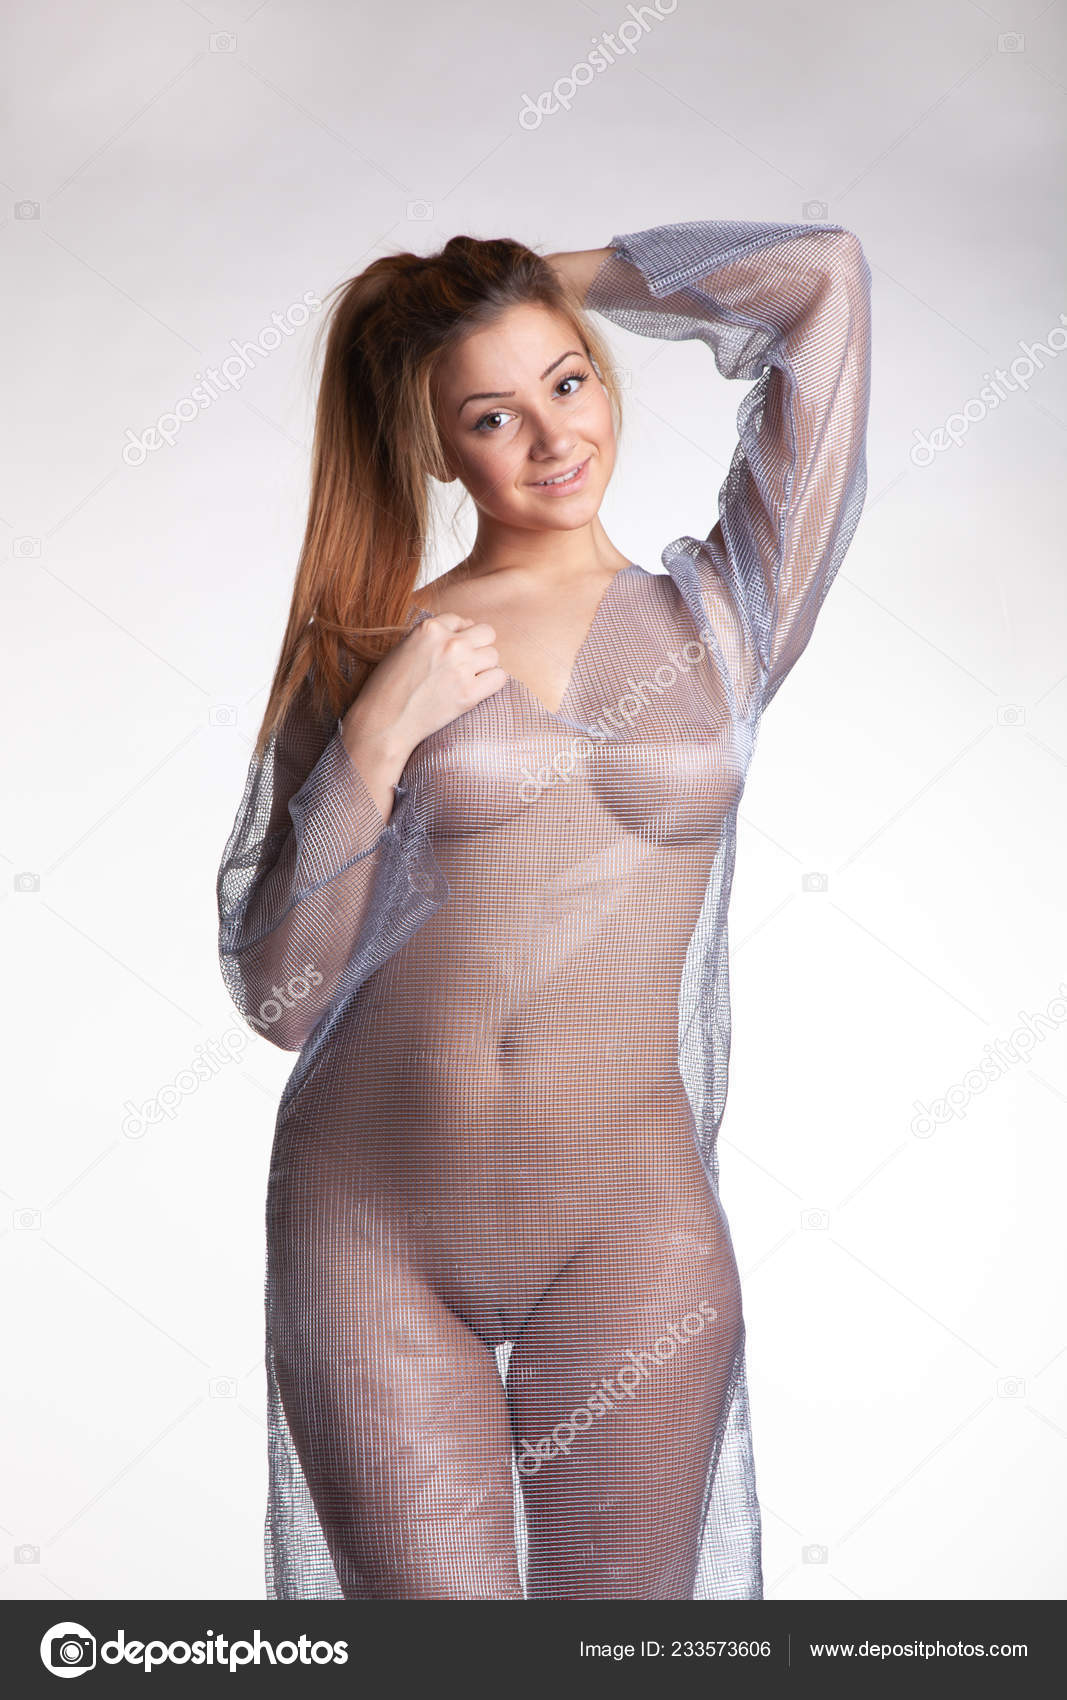 https://st4n.depositphotos.com/10086424/23357/i/1600/depositphotos_233573606-stock-photo-young-beautiful-girl-posing-nude.jpg